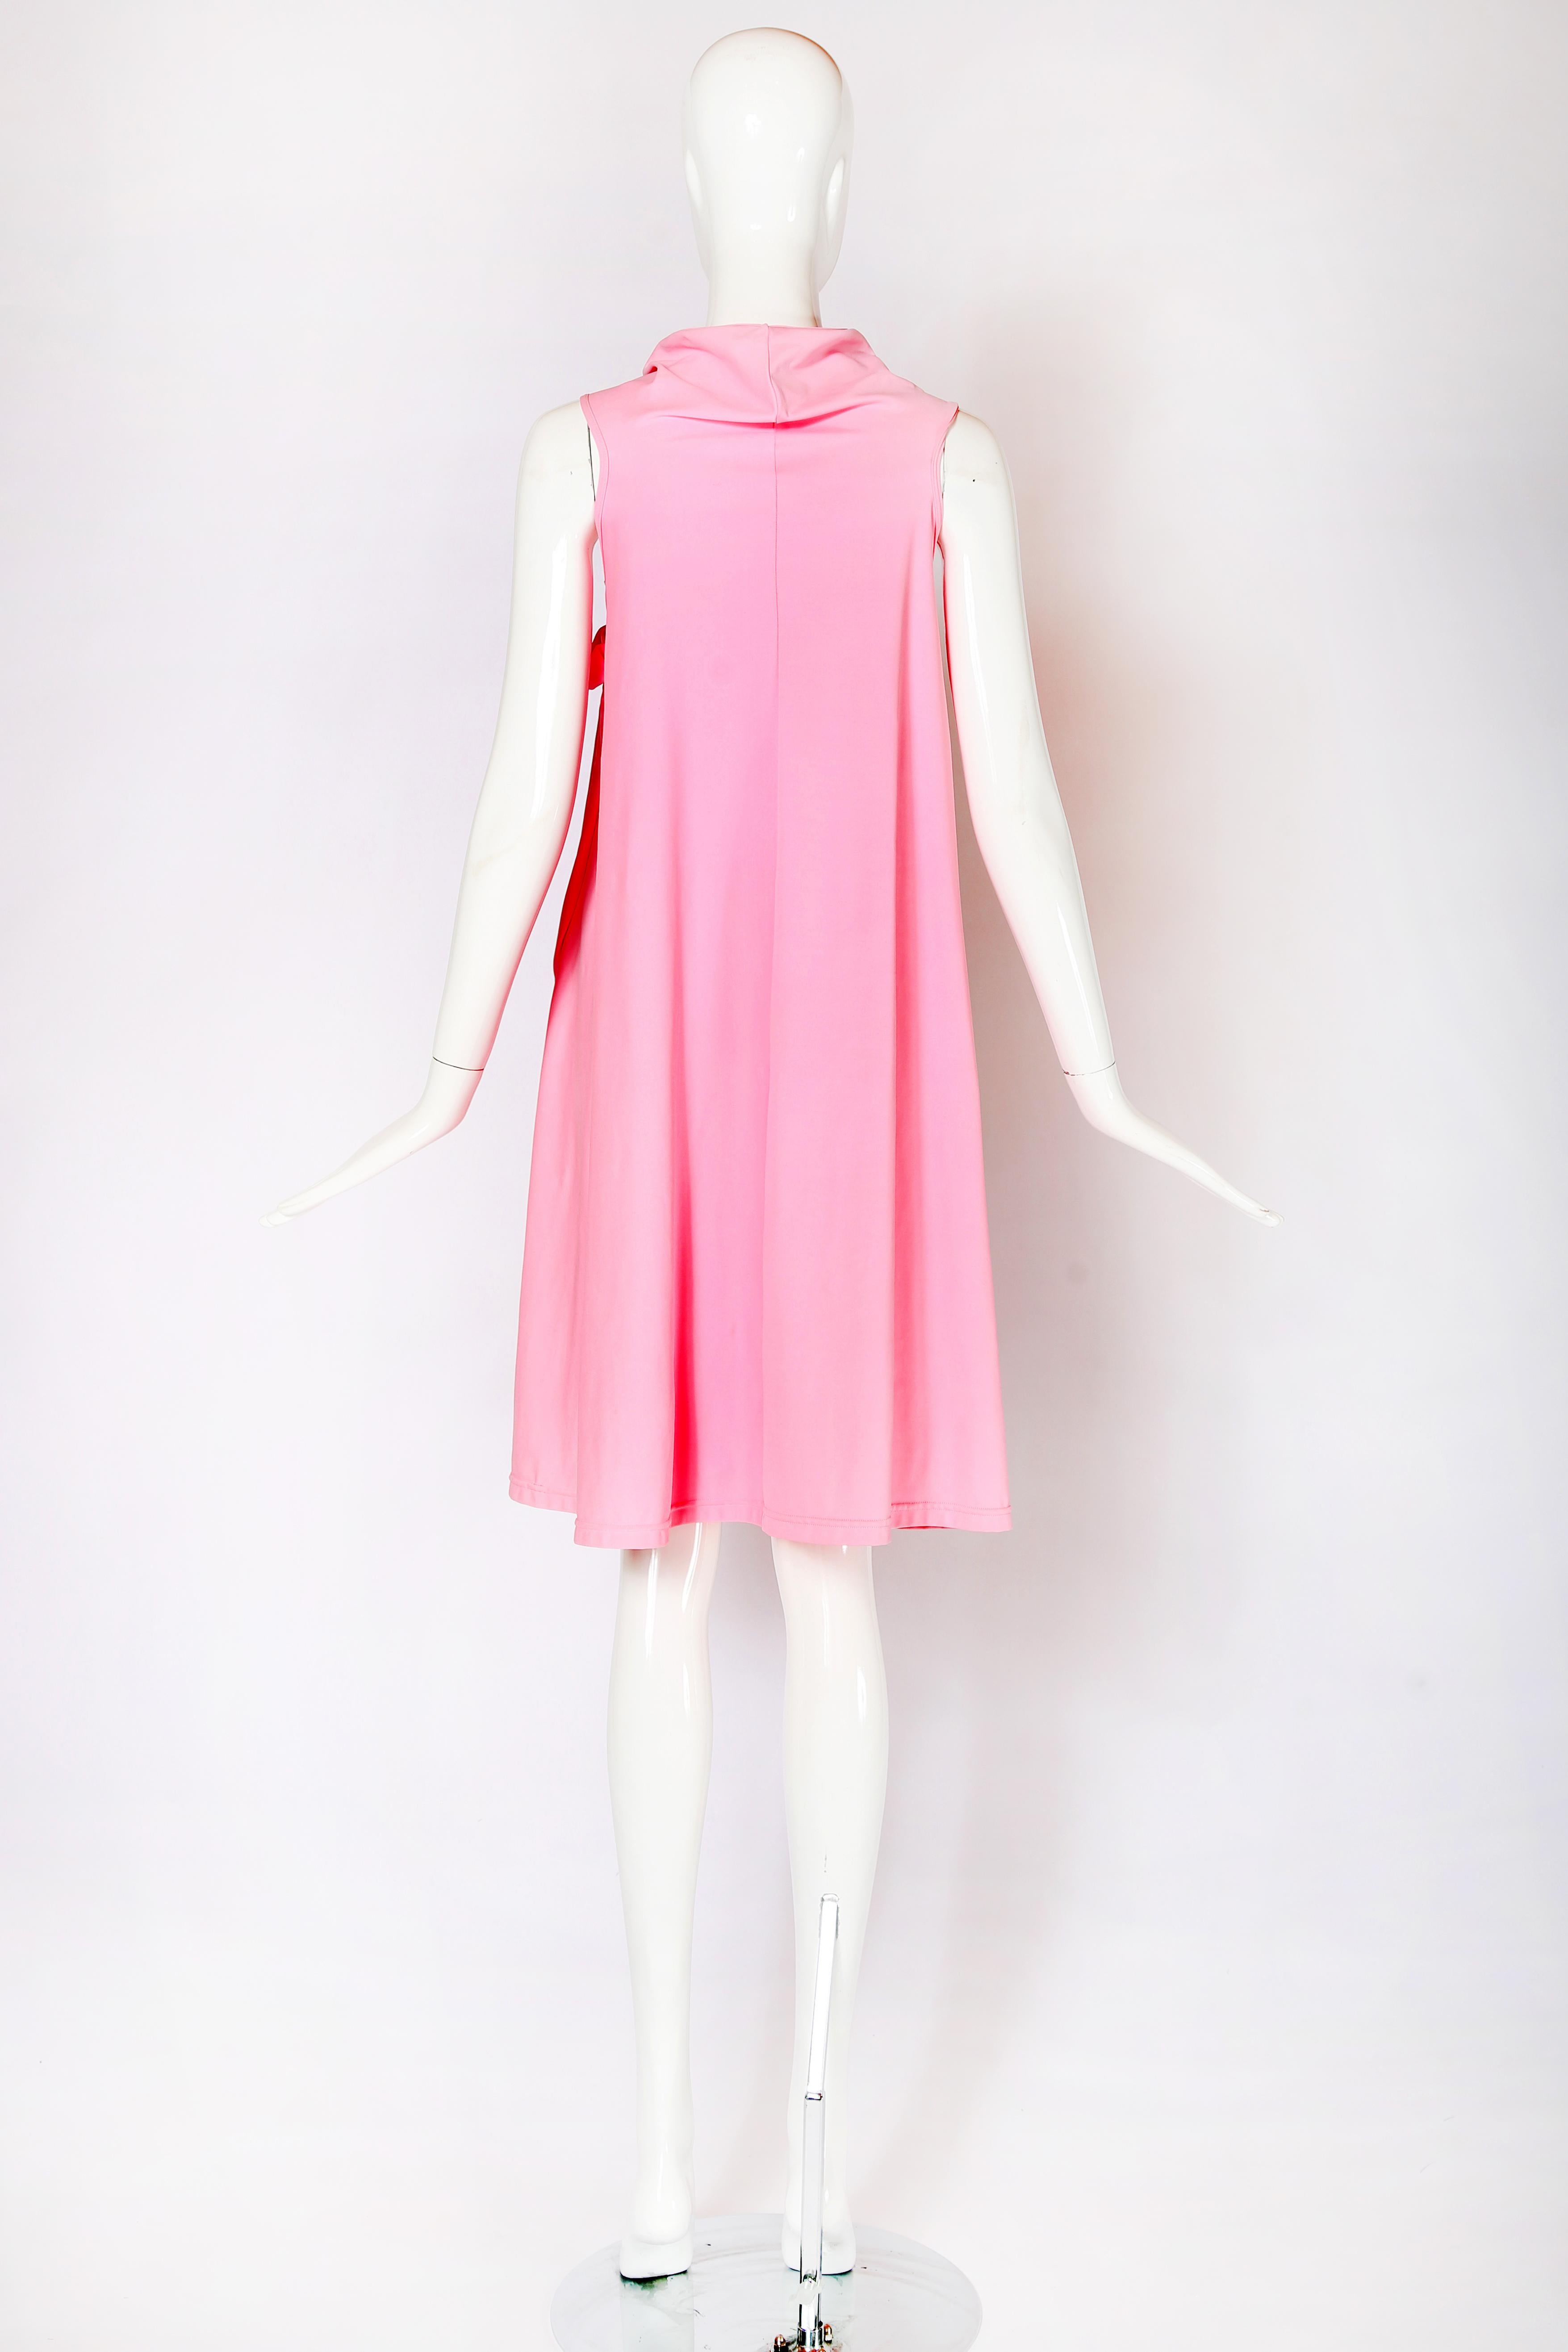 Comme Des Garcons Pink Padded Gloves Dress 2007 1